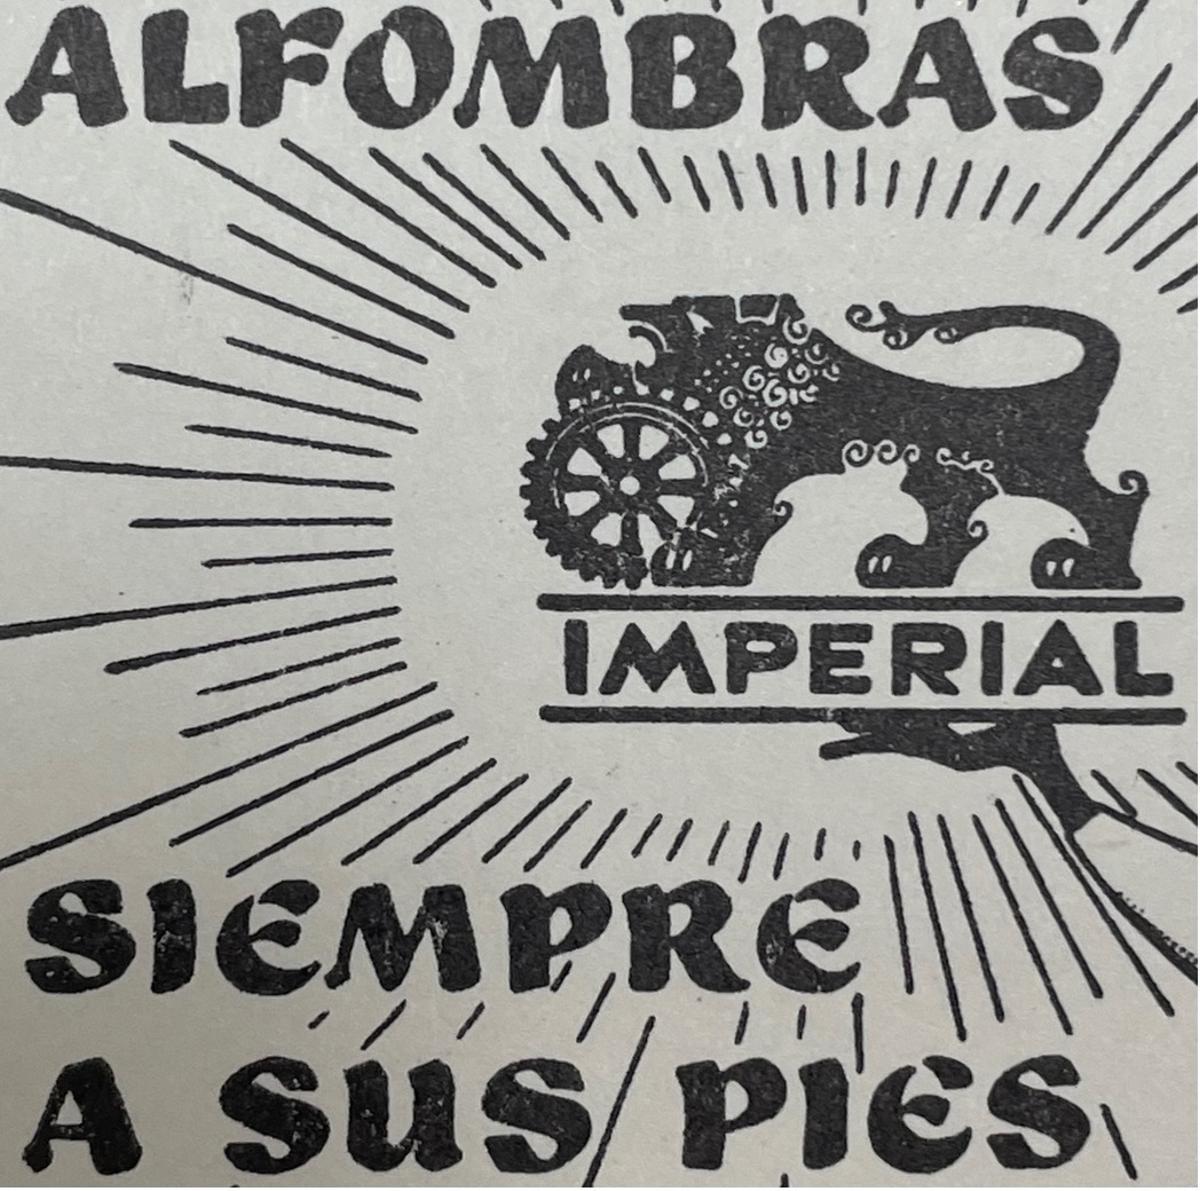 “Alfombras Imperial” resultó elegido como marca y el de “siempre a sus pies” el slogan.